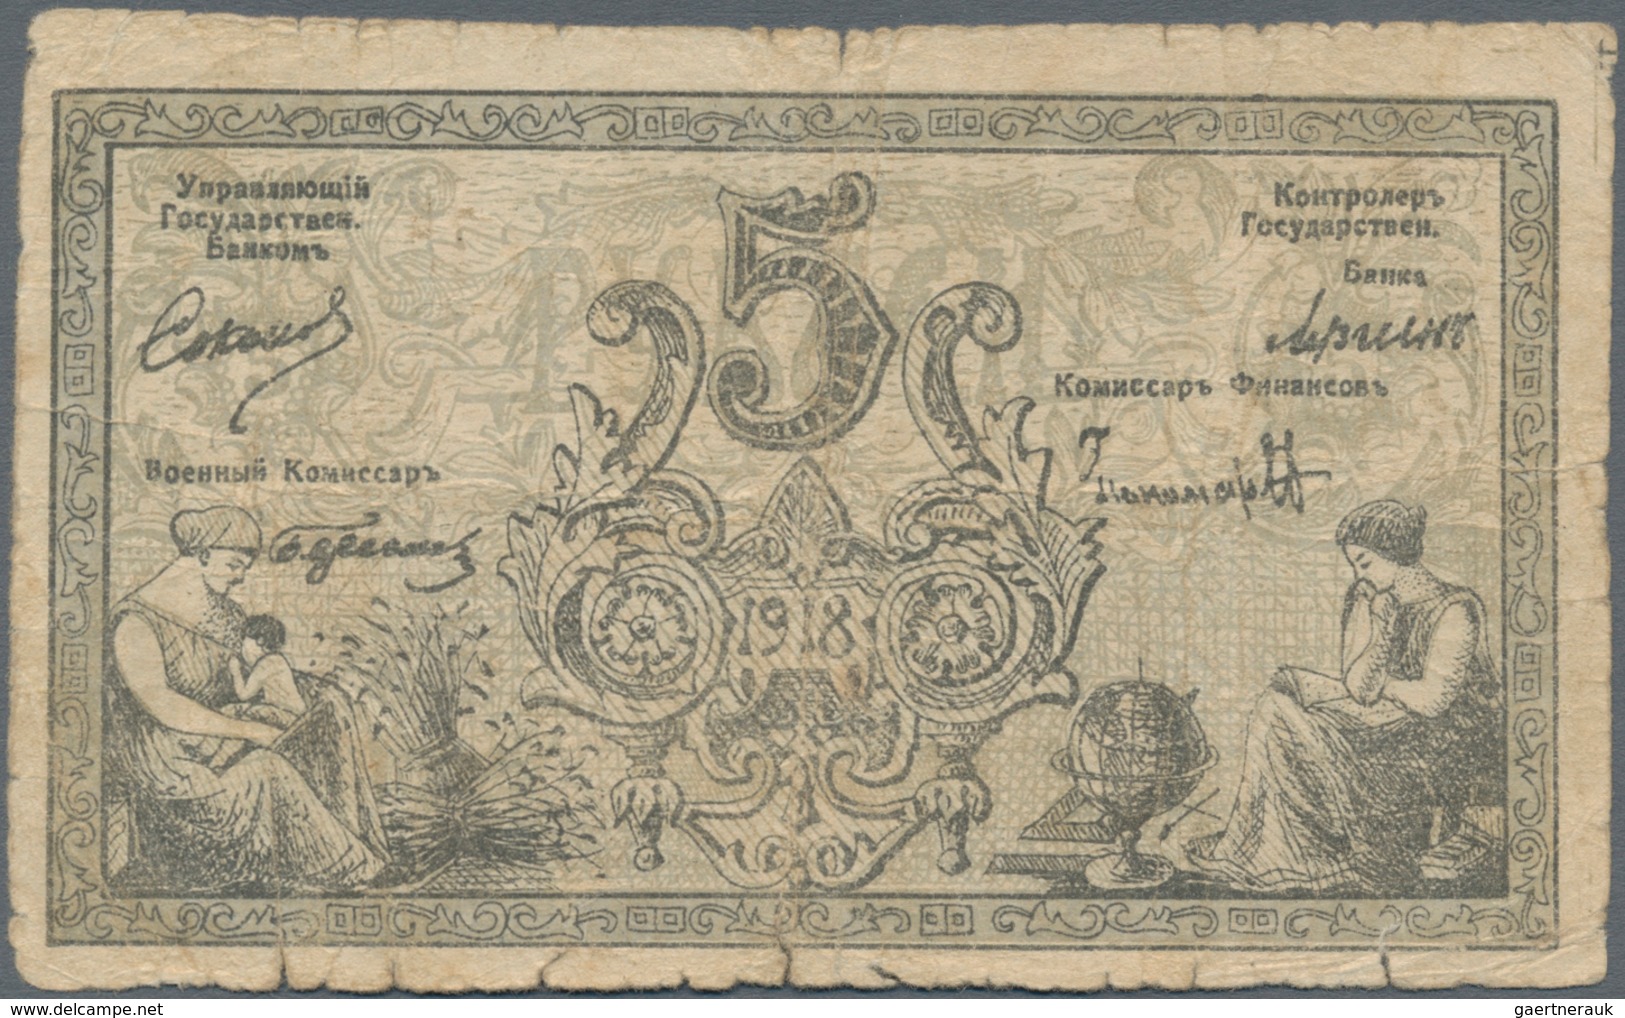 Russia / Russland: Central Asia - Semireche Region 5 Rubles 1918, P.S1120 (R. 20605, K. 5), Conditio - Russia